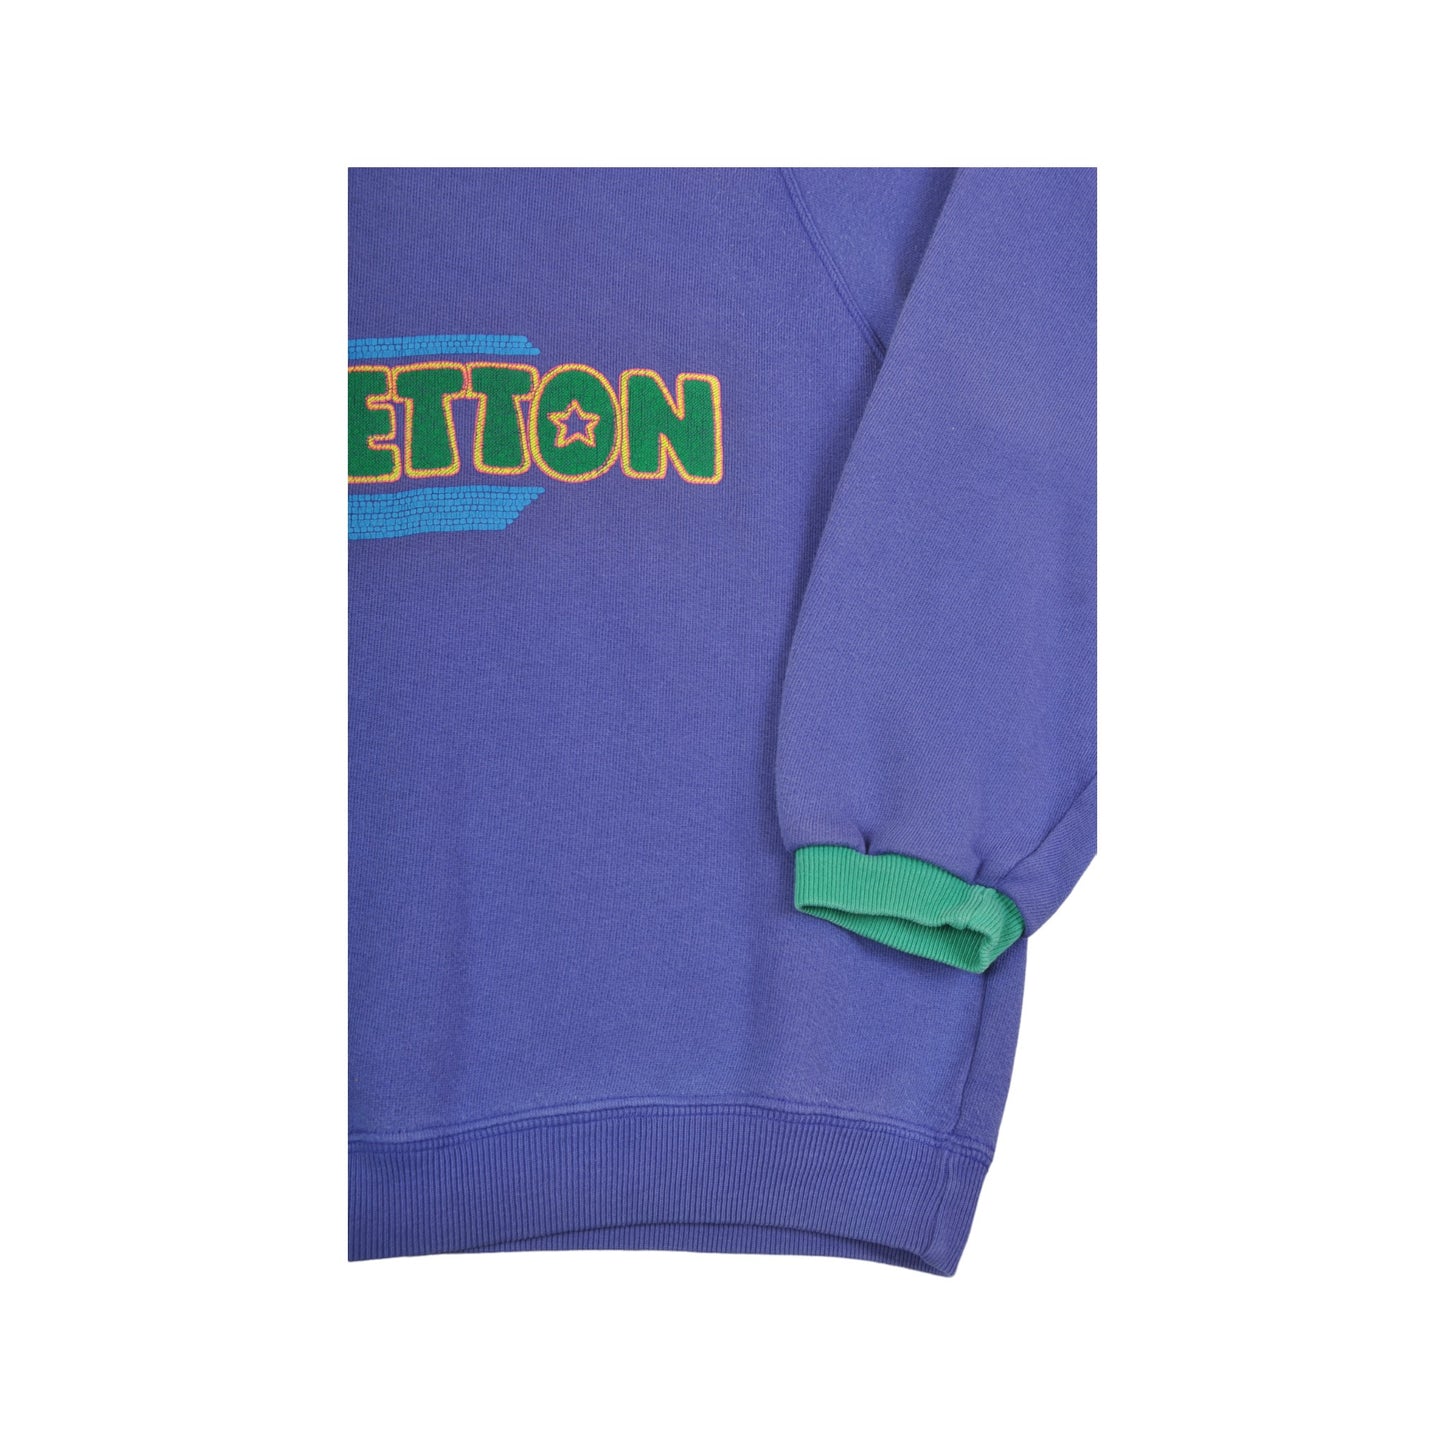 Vintage Benetton Crew Neck Sweatshirt Purple  Ladies XXS